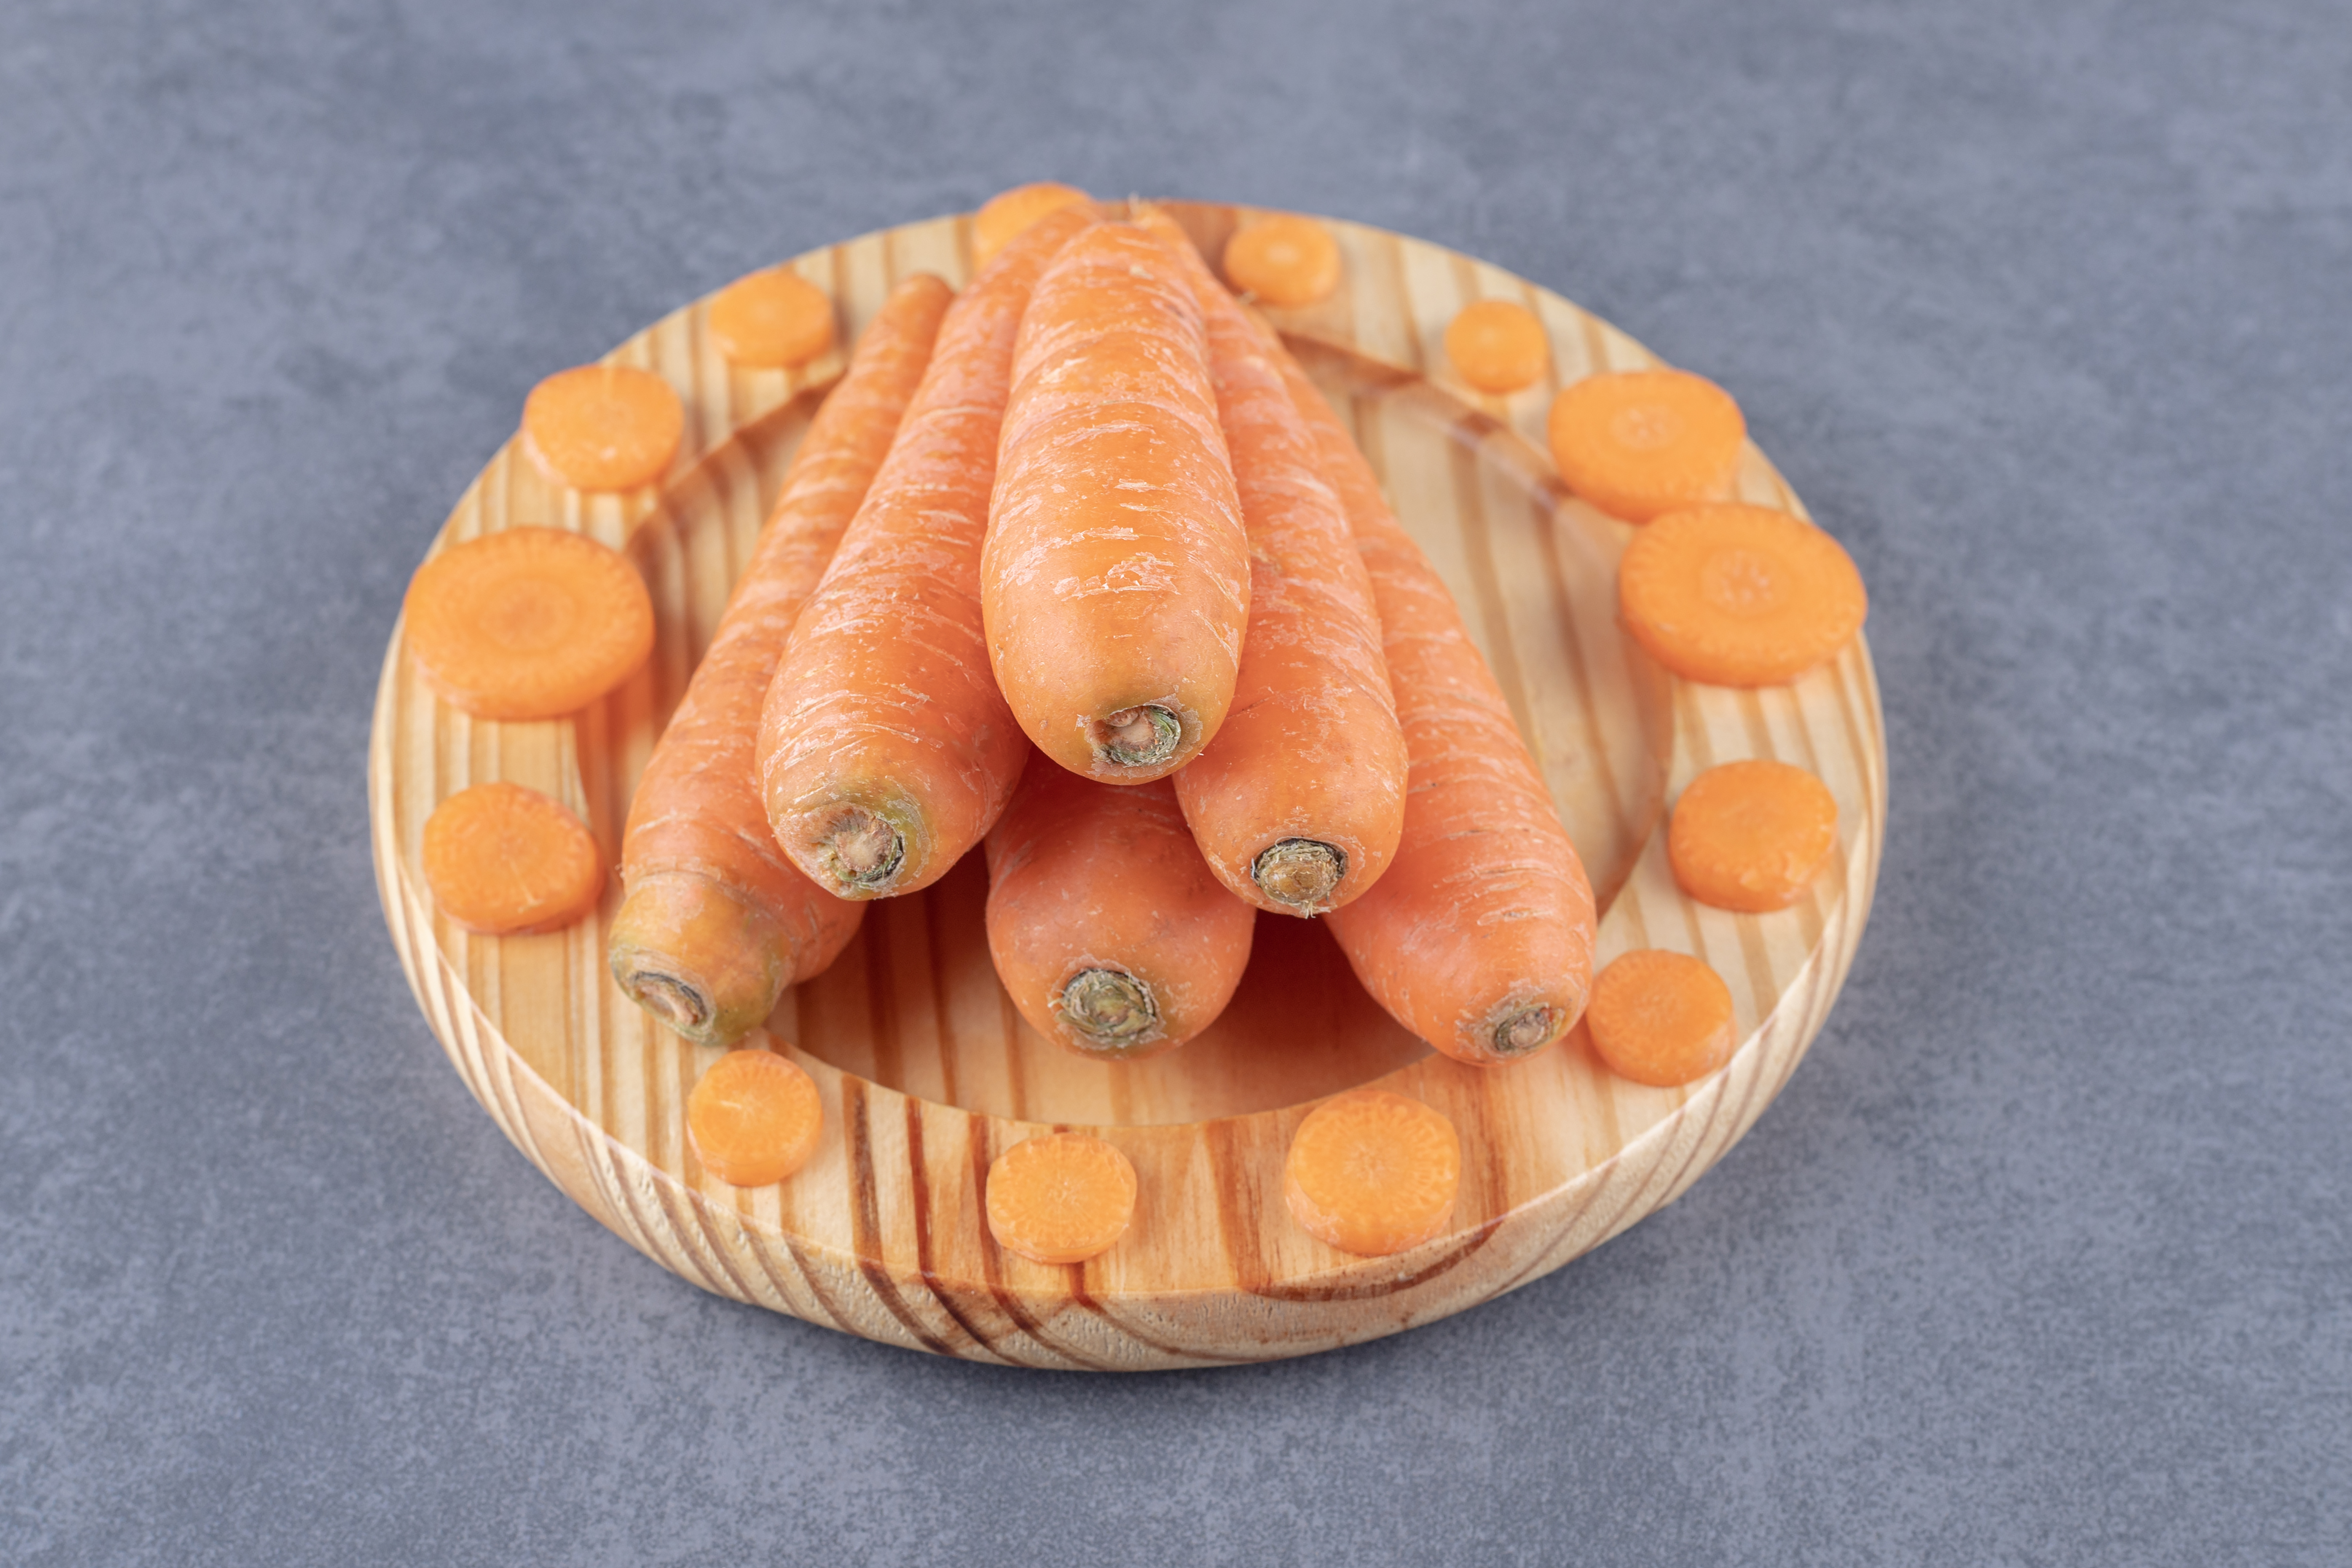 동그란 나무 접시 위에 당근을 6개 가운데 두었고&#44; 접시 테두리 부분에 당근을 얇게 썬 것을 둥그렇게 놓아두고 찍은 사진 (whole-sliced-carrots-wooden-plate-marble-surface)